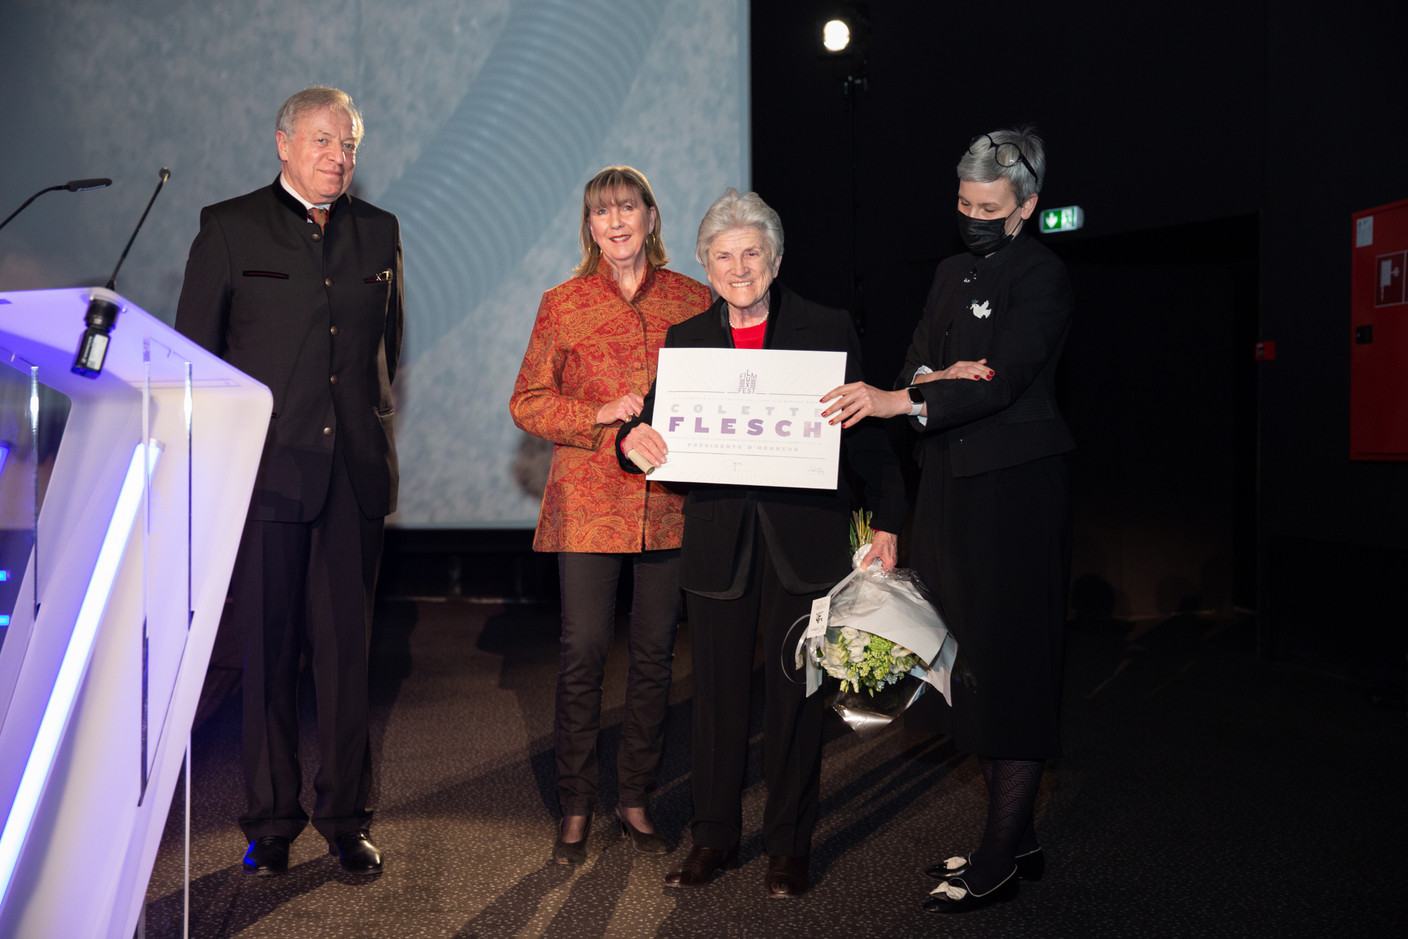 L’ancienne présidente du festival, Colette Flesch, a reçu des mains de Georges Santer, Lydie Polfer et Sam Tanson un certificat la nommant officiellement présidente d’honneur. (Photo: Romain Gamba/Maison Moderne)